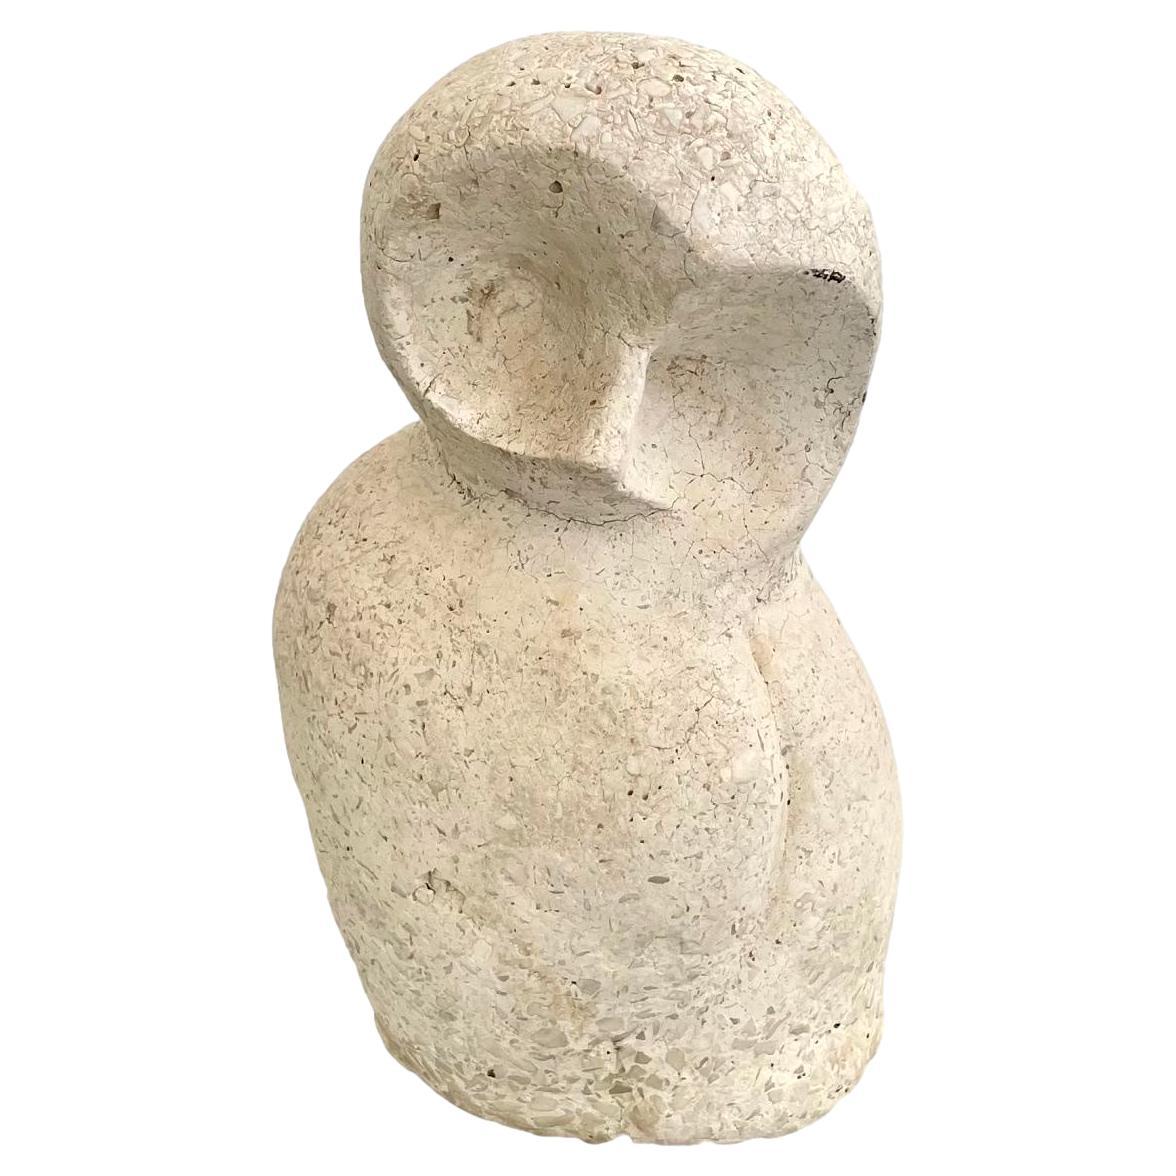 Sculpture de hibou en pierre de ciment dans le style de Constantin Brâncuși, vers 1960